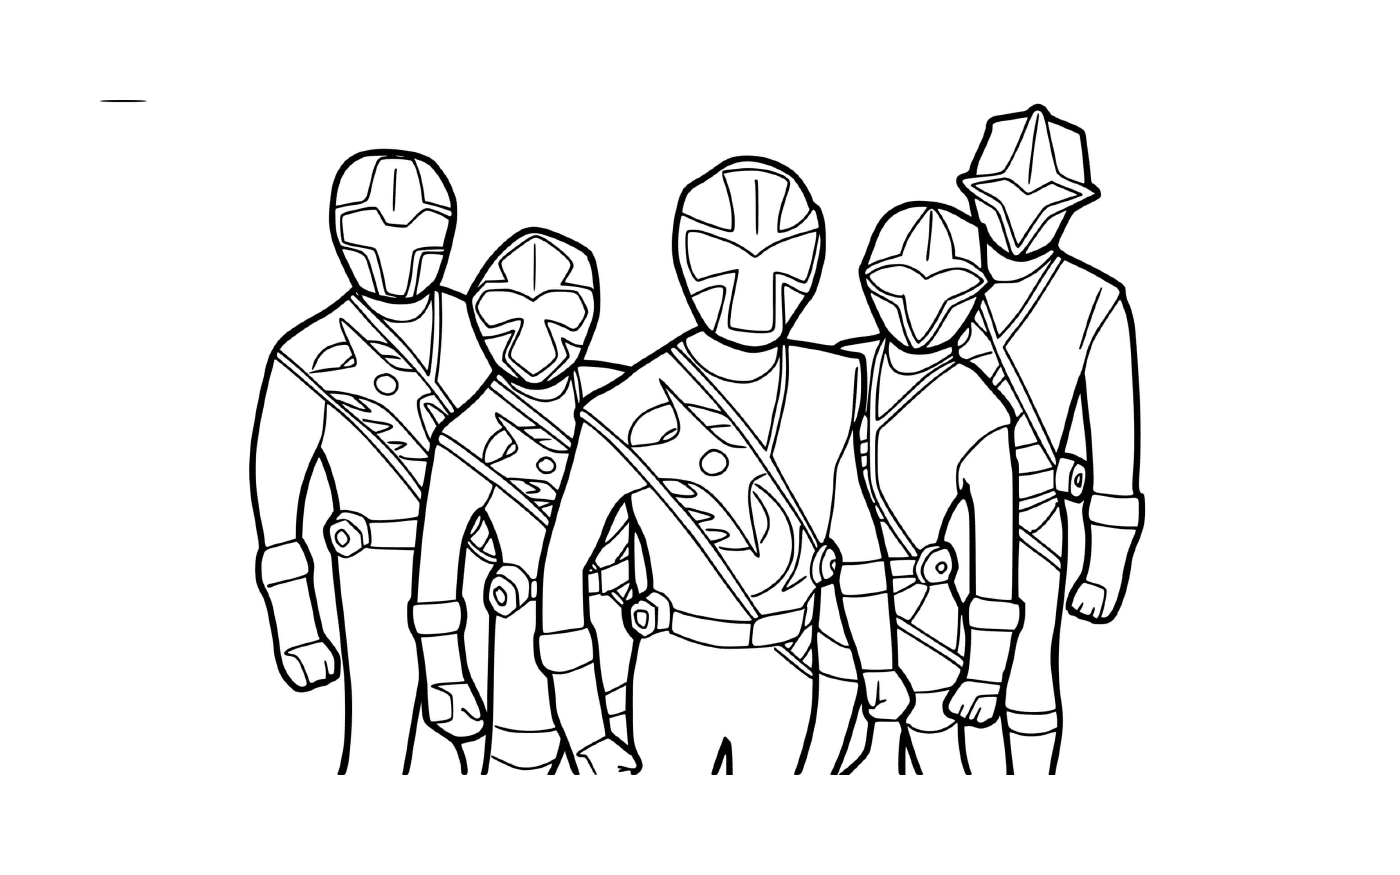  Power Rangers Steel - Equipe ninja 